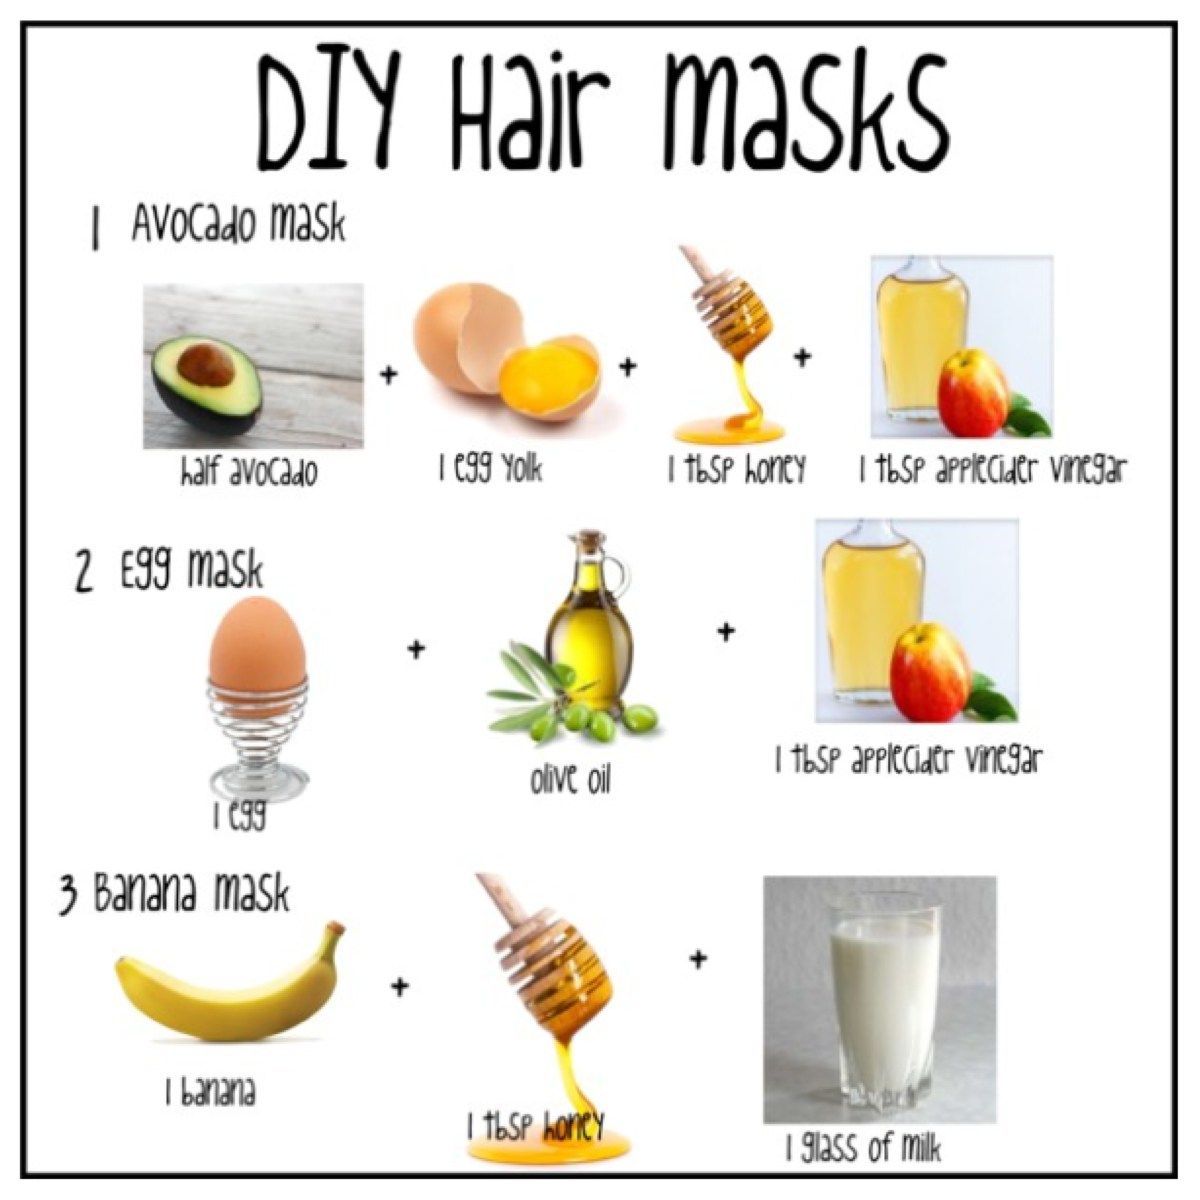 DIY Hair Masks -   12 hairstyles Quick healthy hair ideas